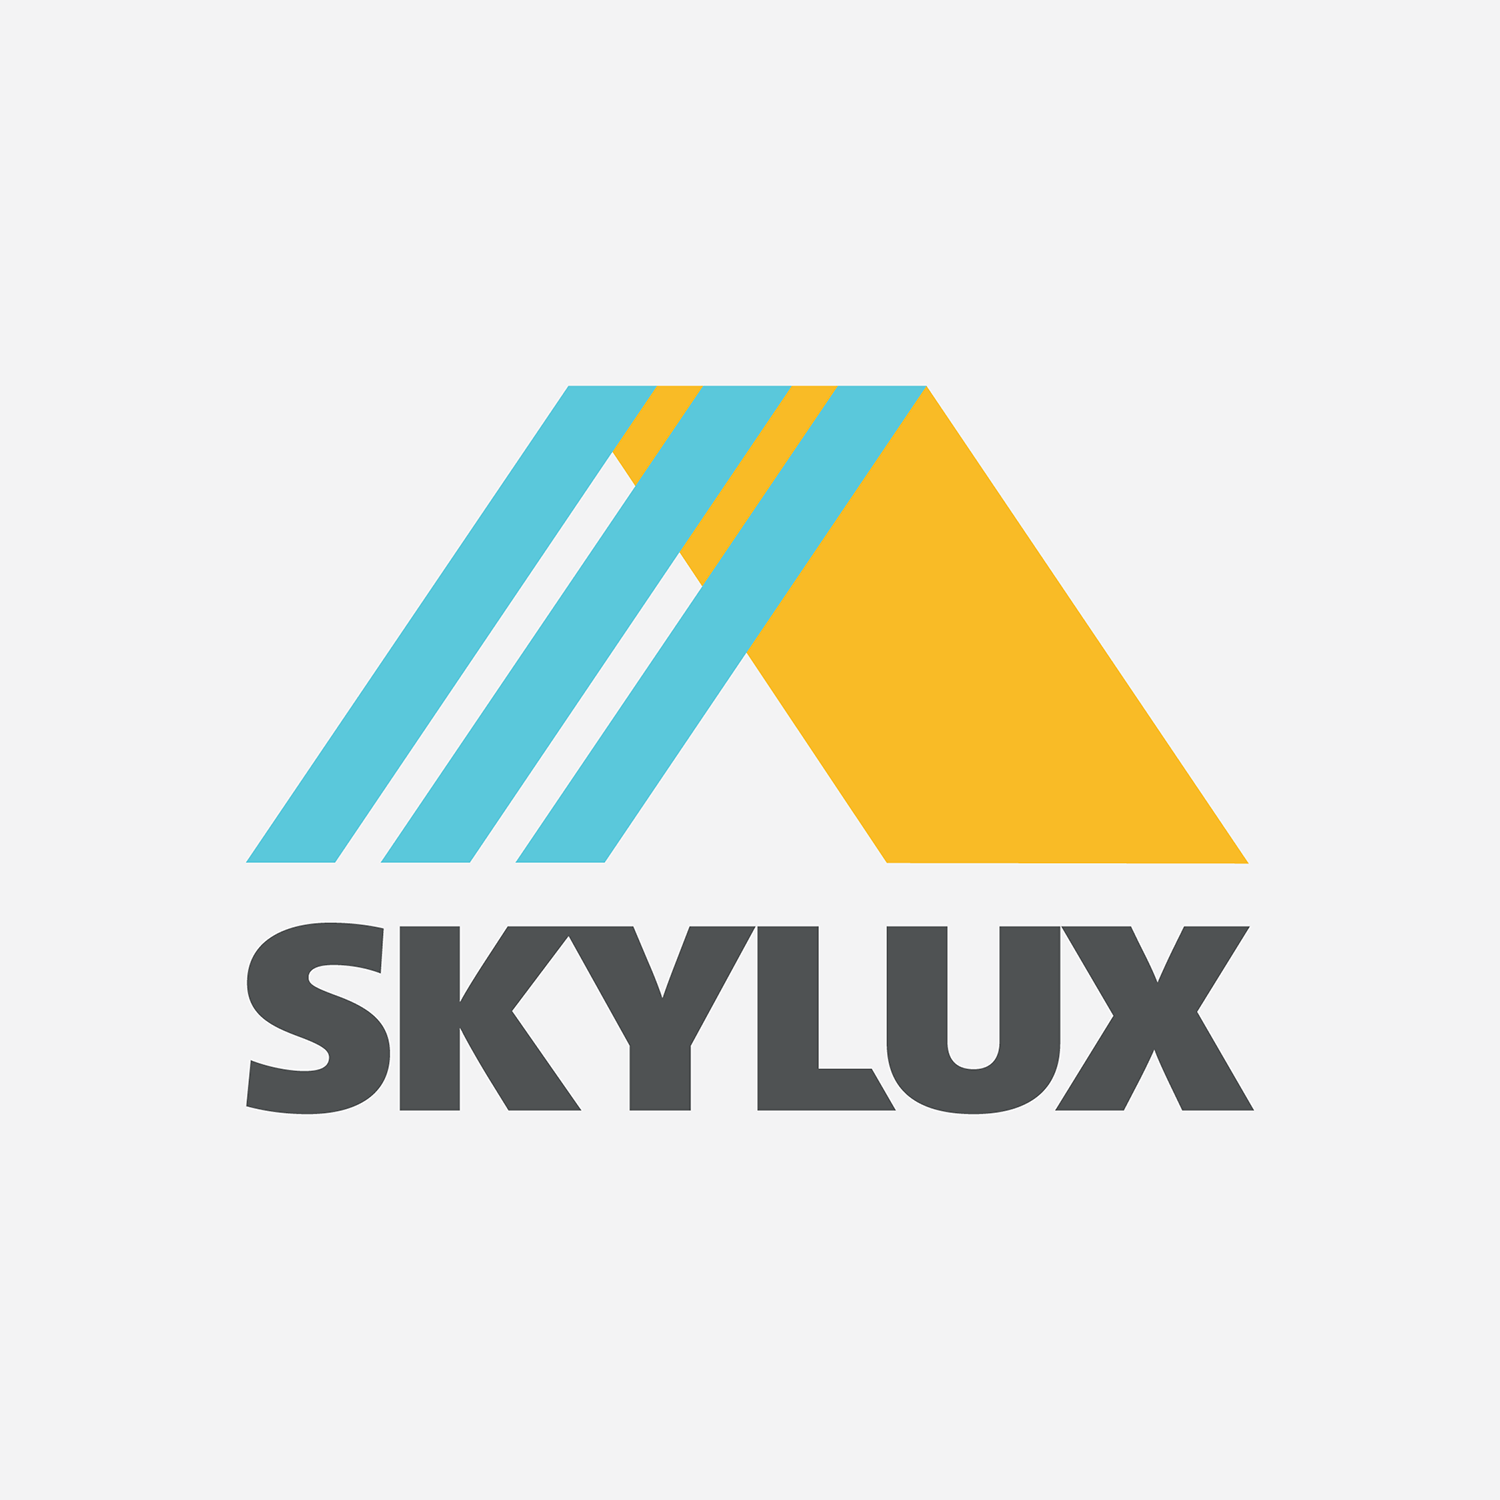 skyluxlogo1